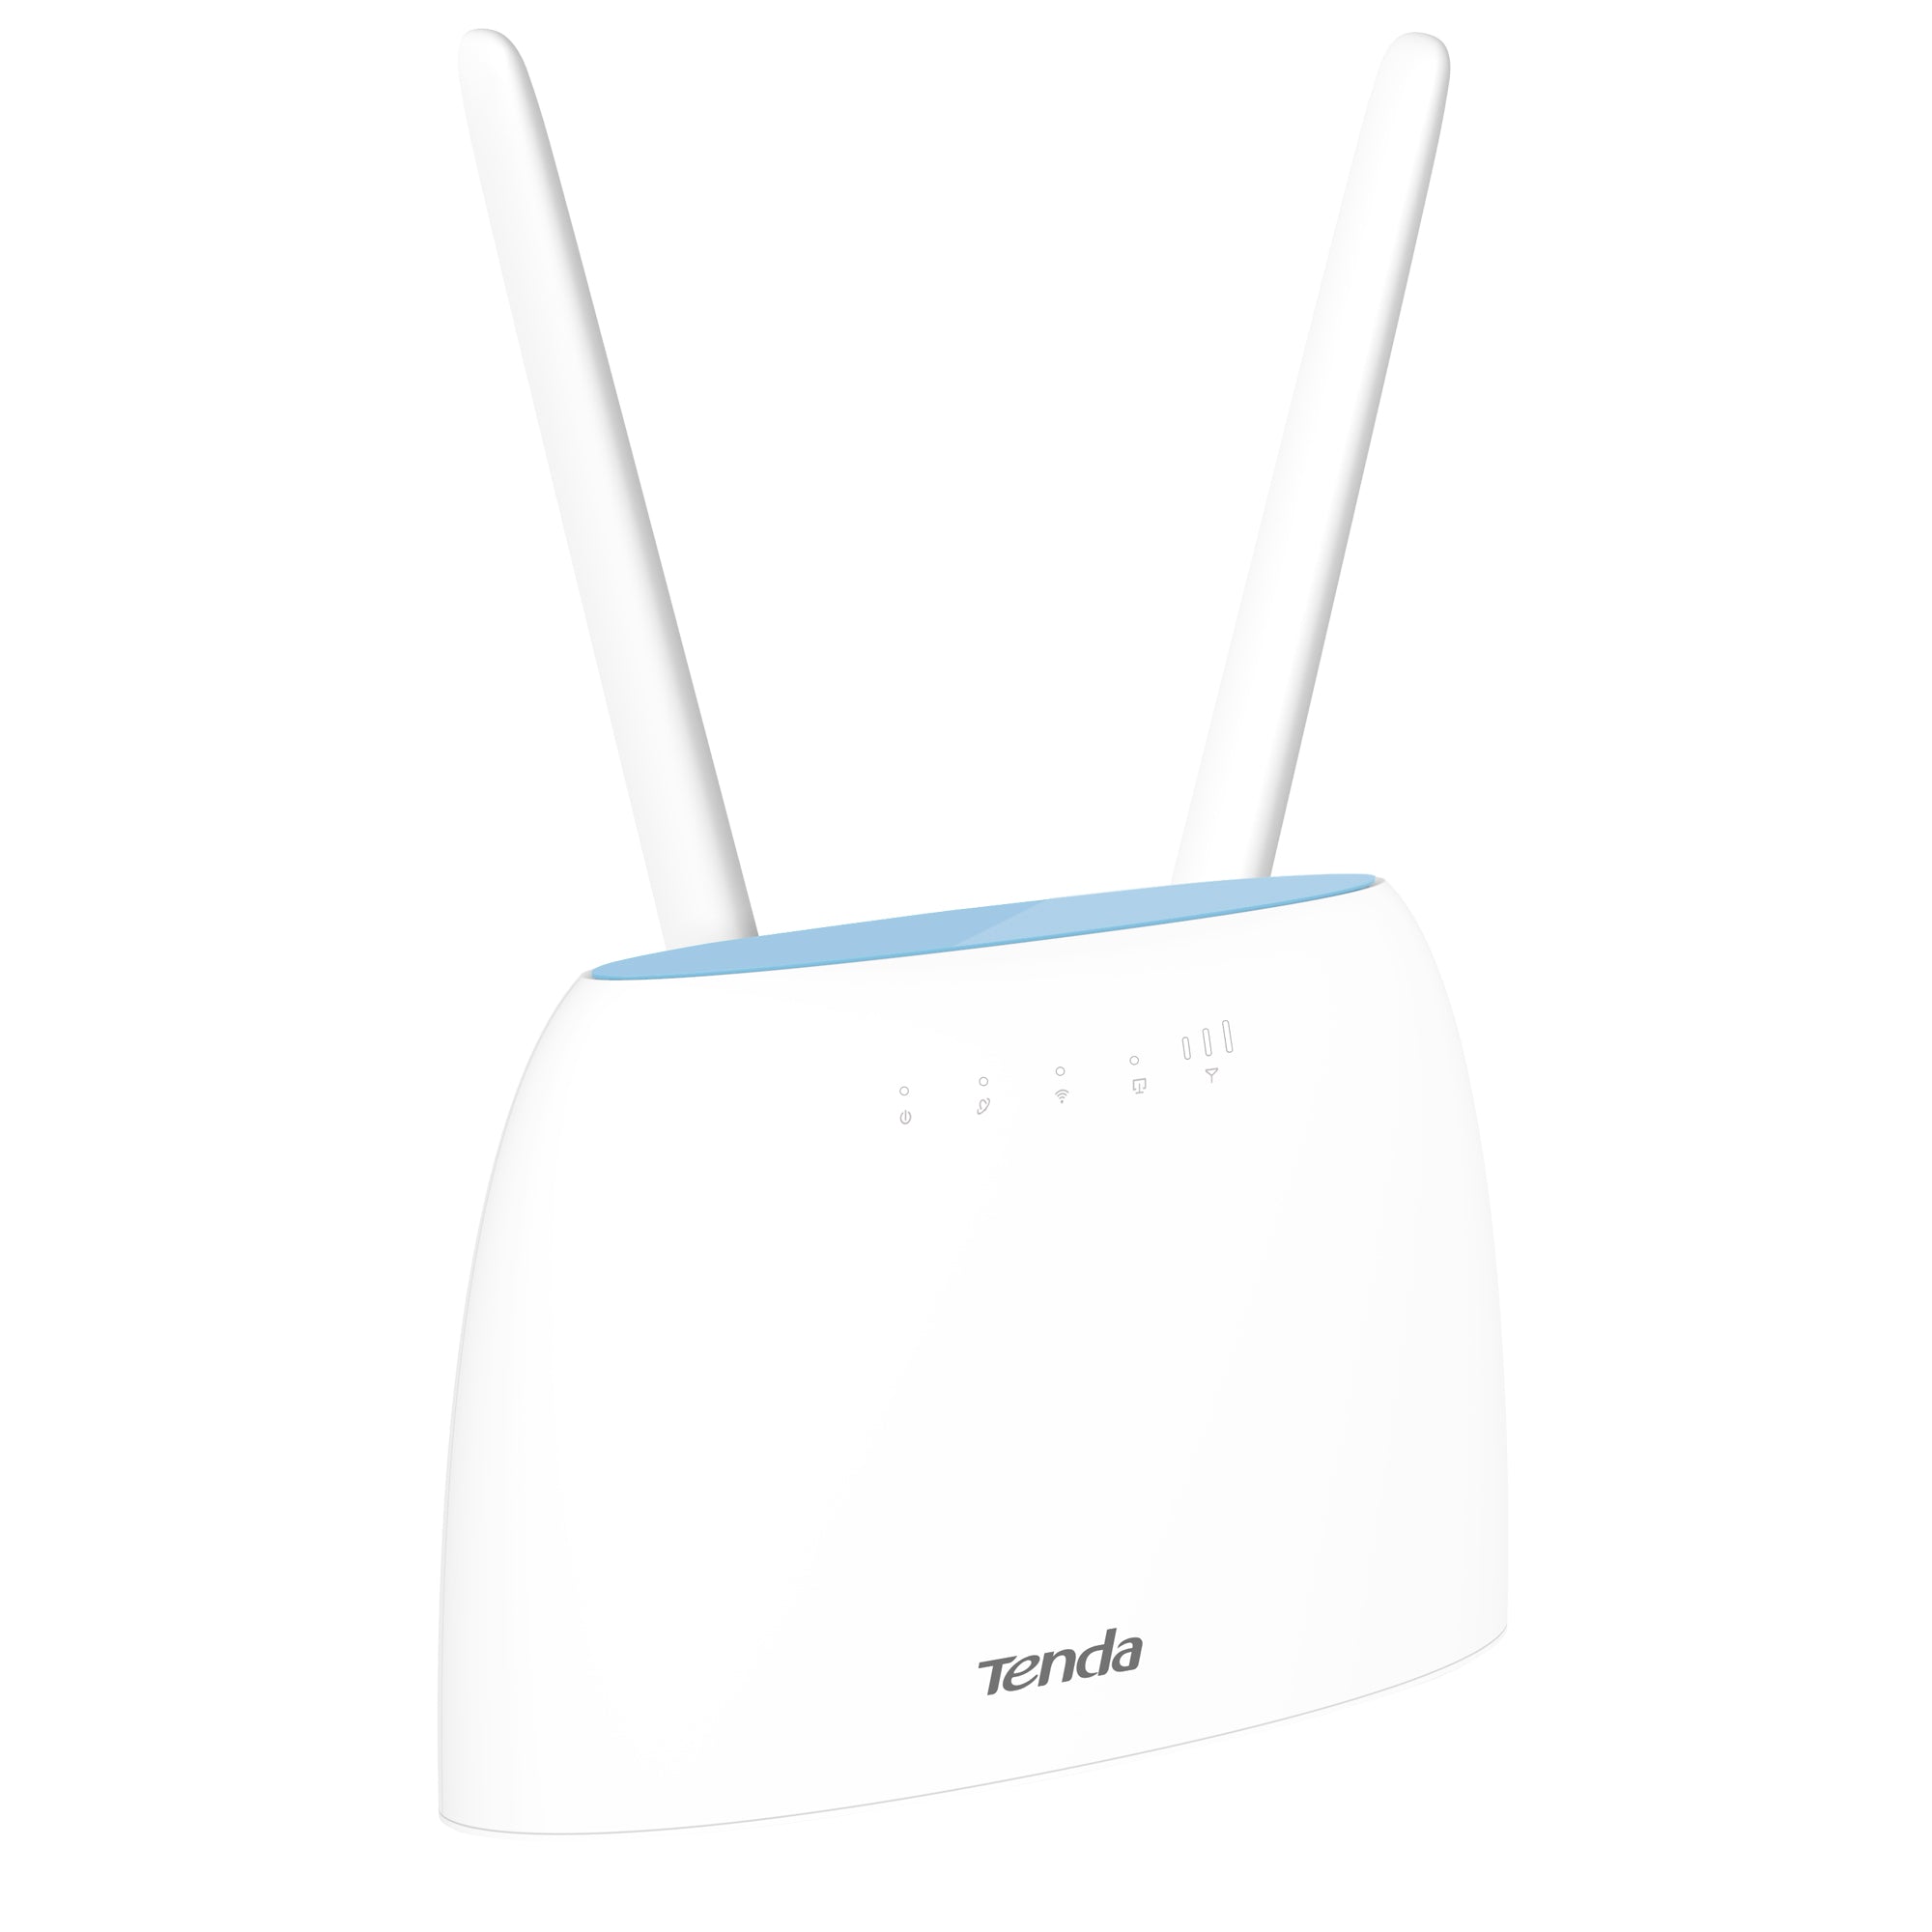 tenda-router-wi-fi-4g-lte-ac1200-dual-band-cat-6